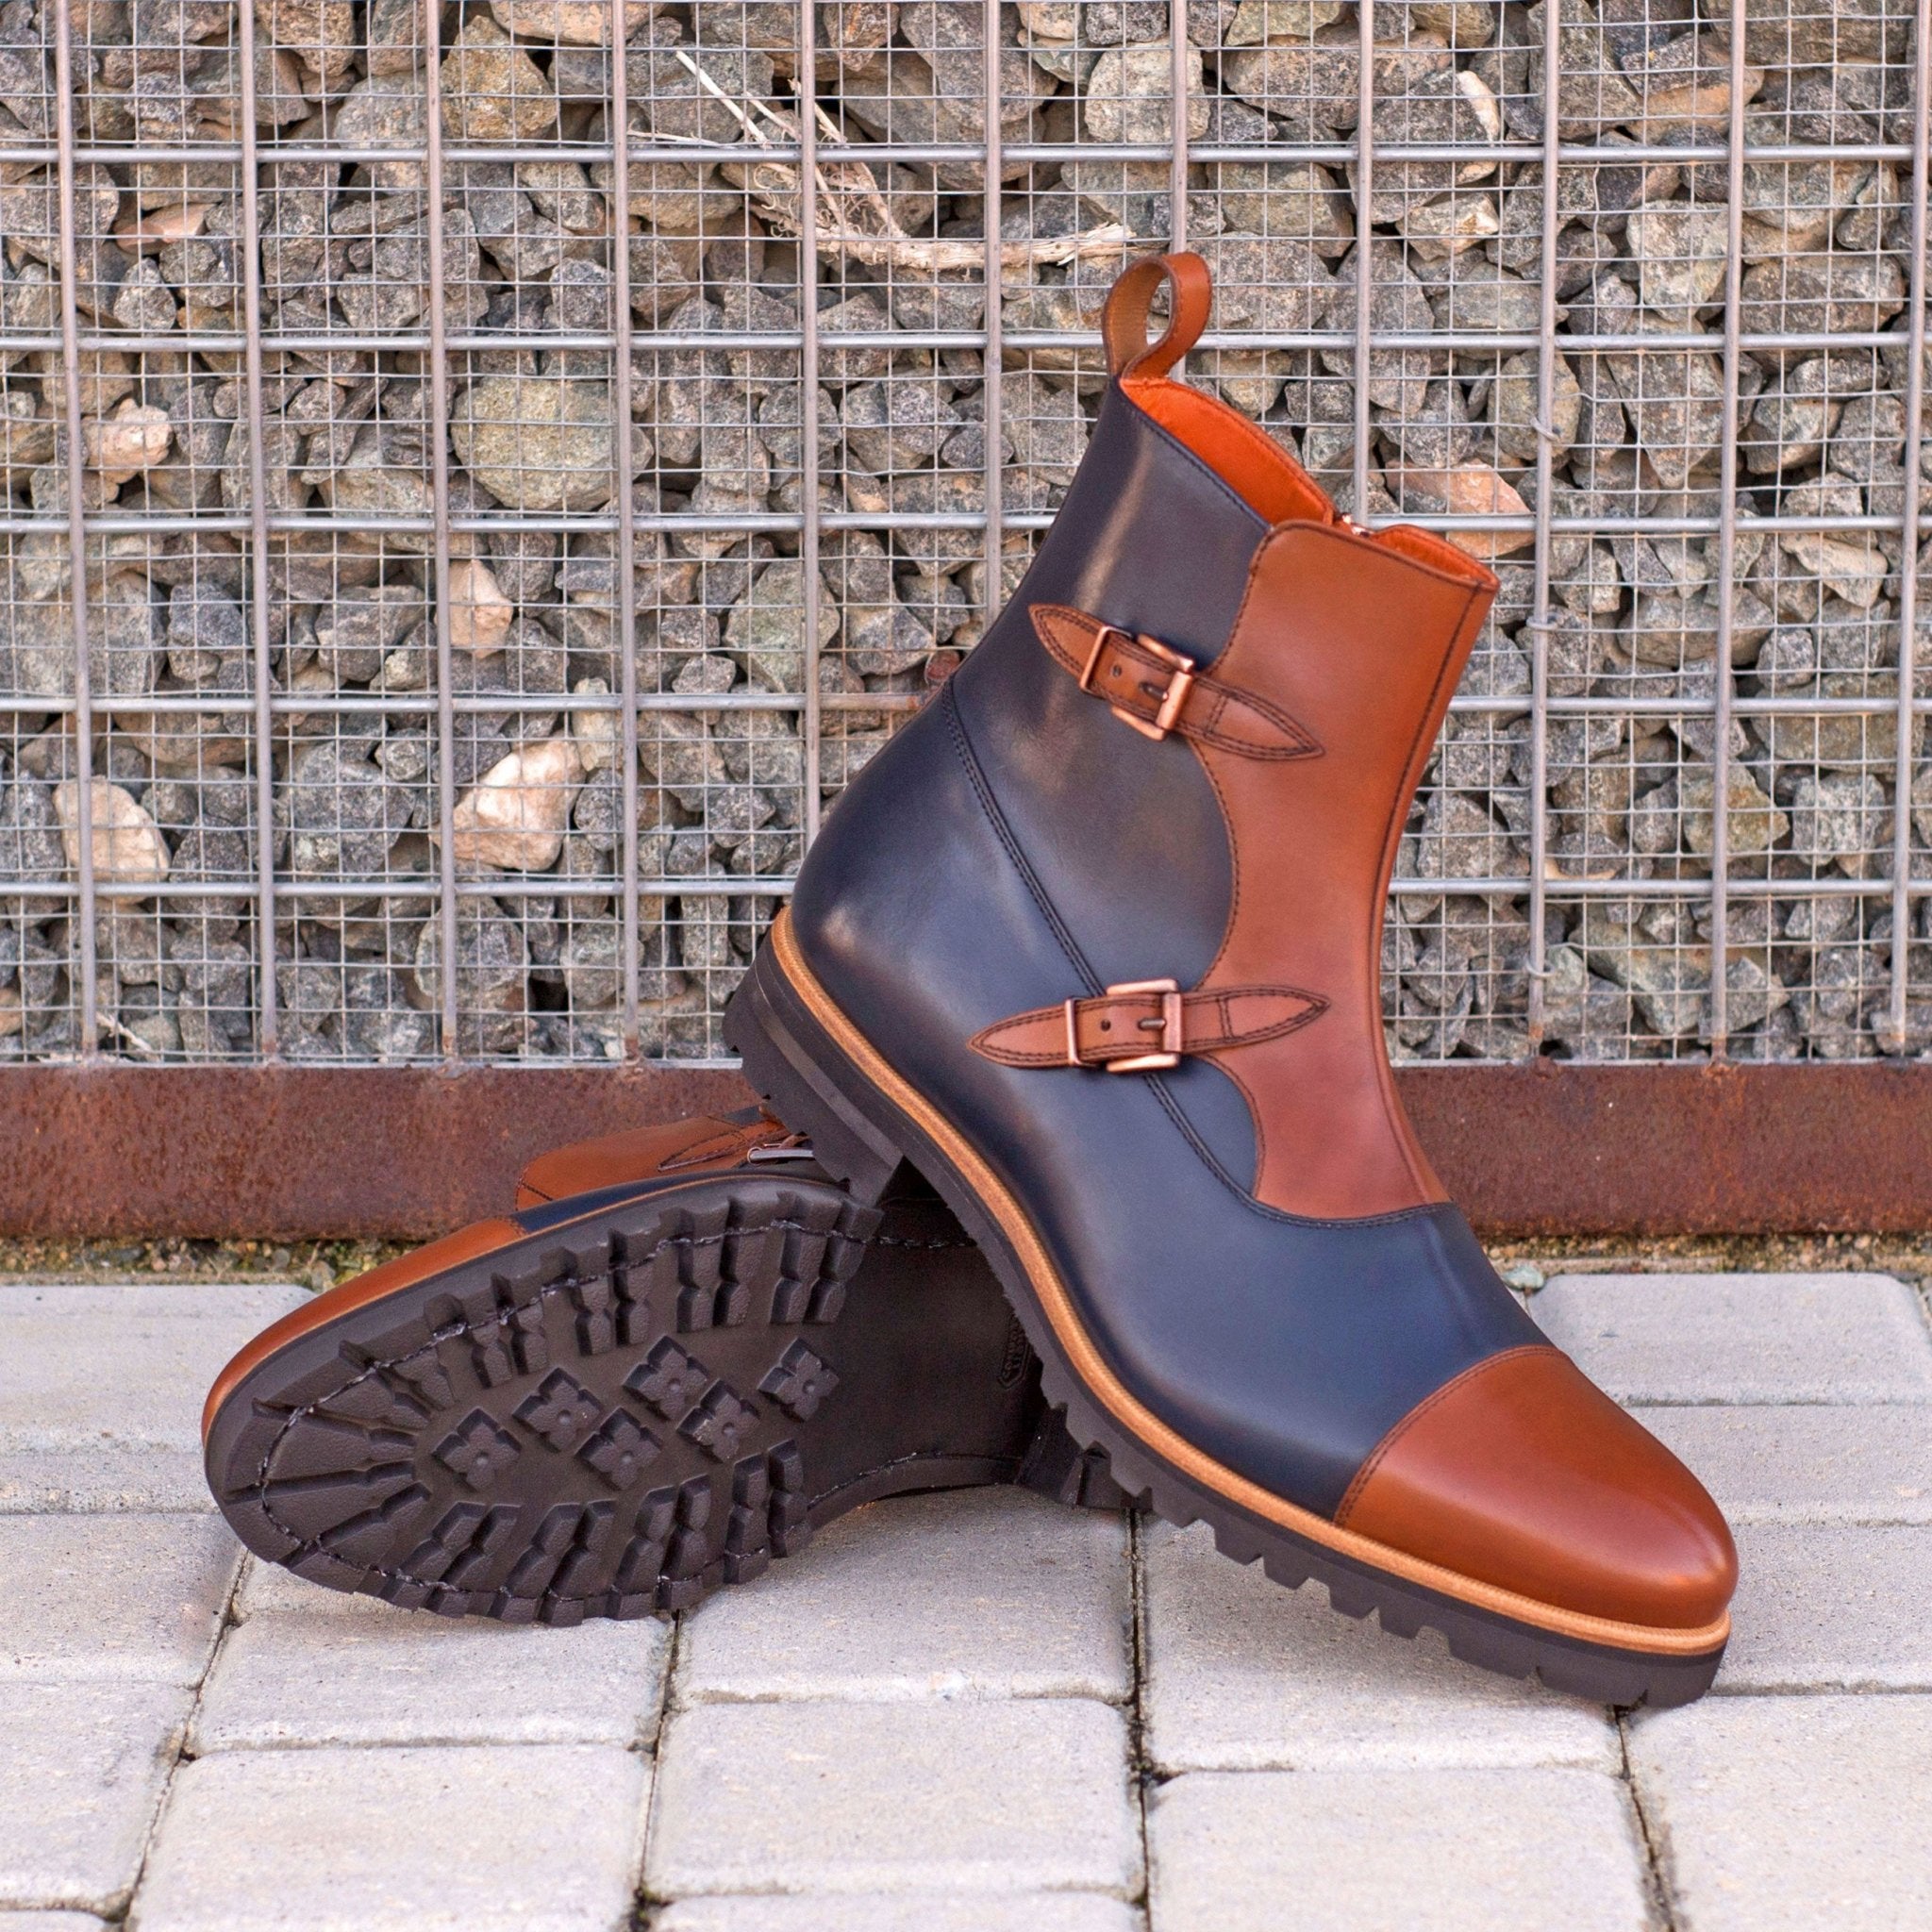 Men's Double Monk Boots in Medium Brown and Navy Blue - Maison de Kingsley Couture Harmonie et Fureur Spain